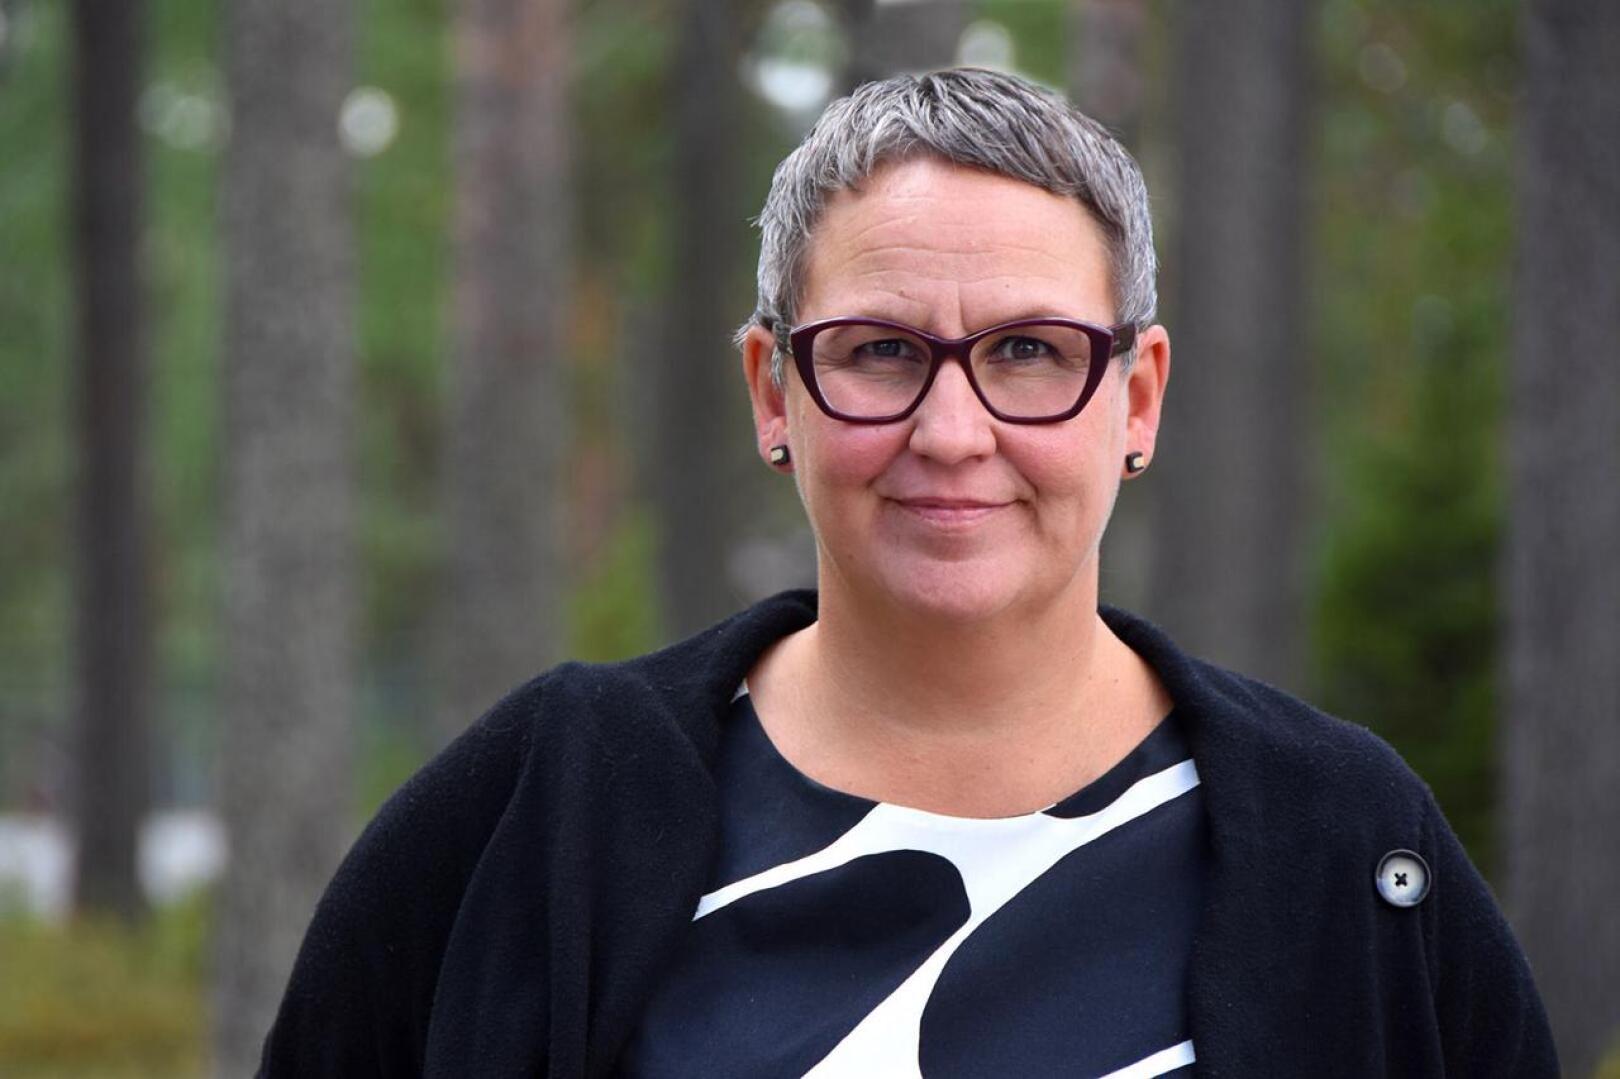 Haapaveden vs. kaupunginjohtaja Marjukka Manninen iloitsee NordFuel Oy:n saamasta tukipäätöksestä, mutta huomauttaa, ettei kaupungin palveluverkon uudistamista voida silti kuopata.